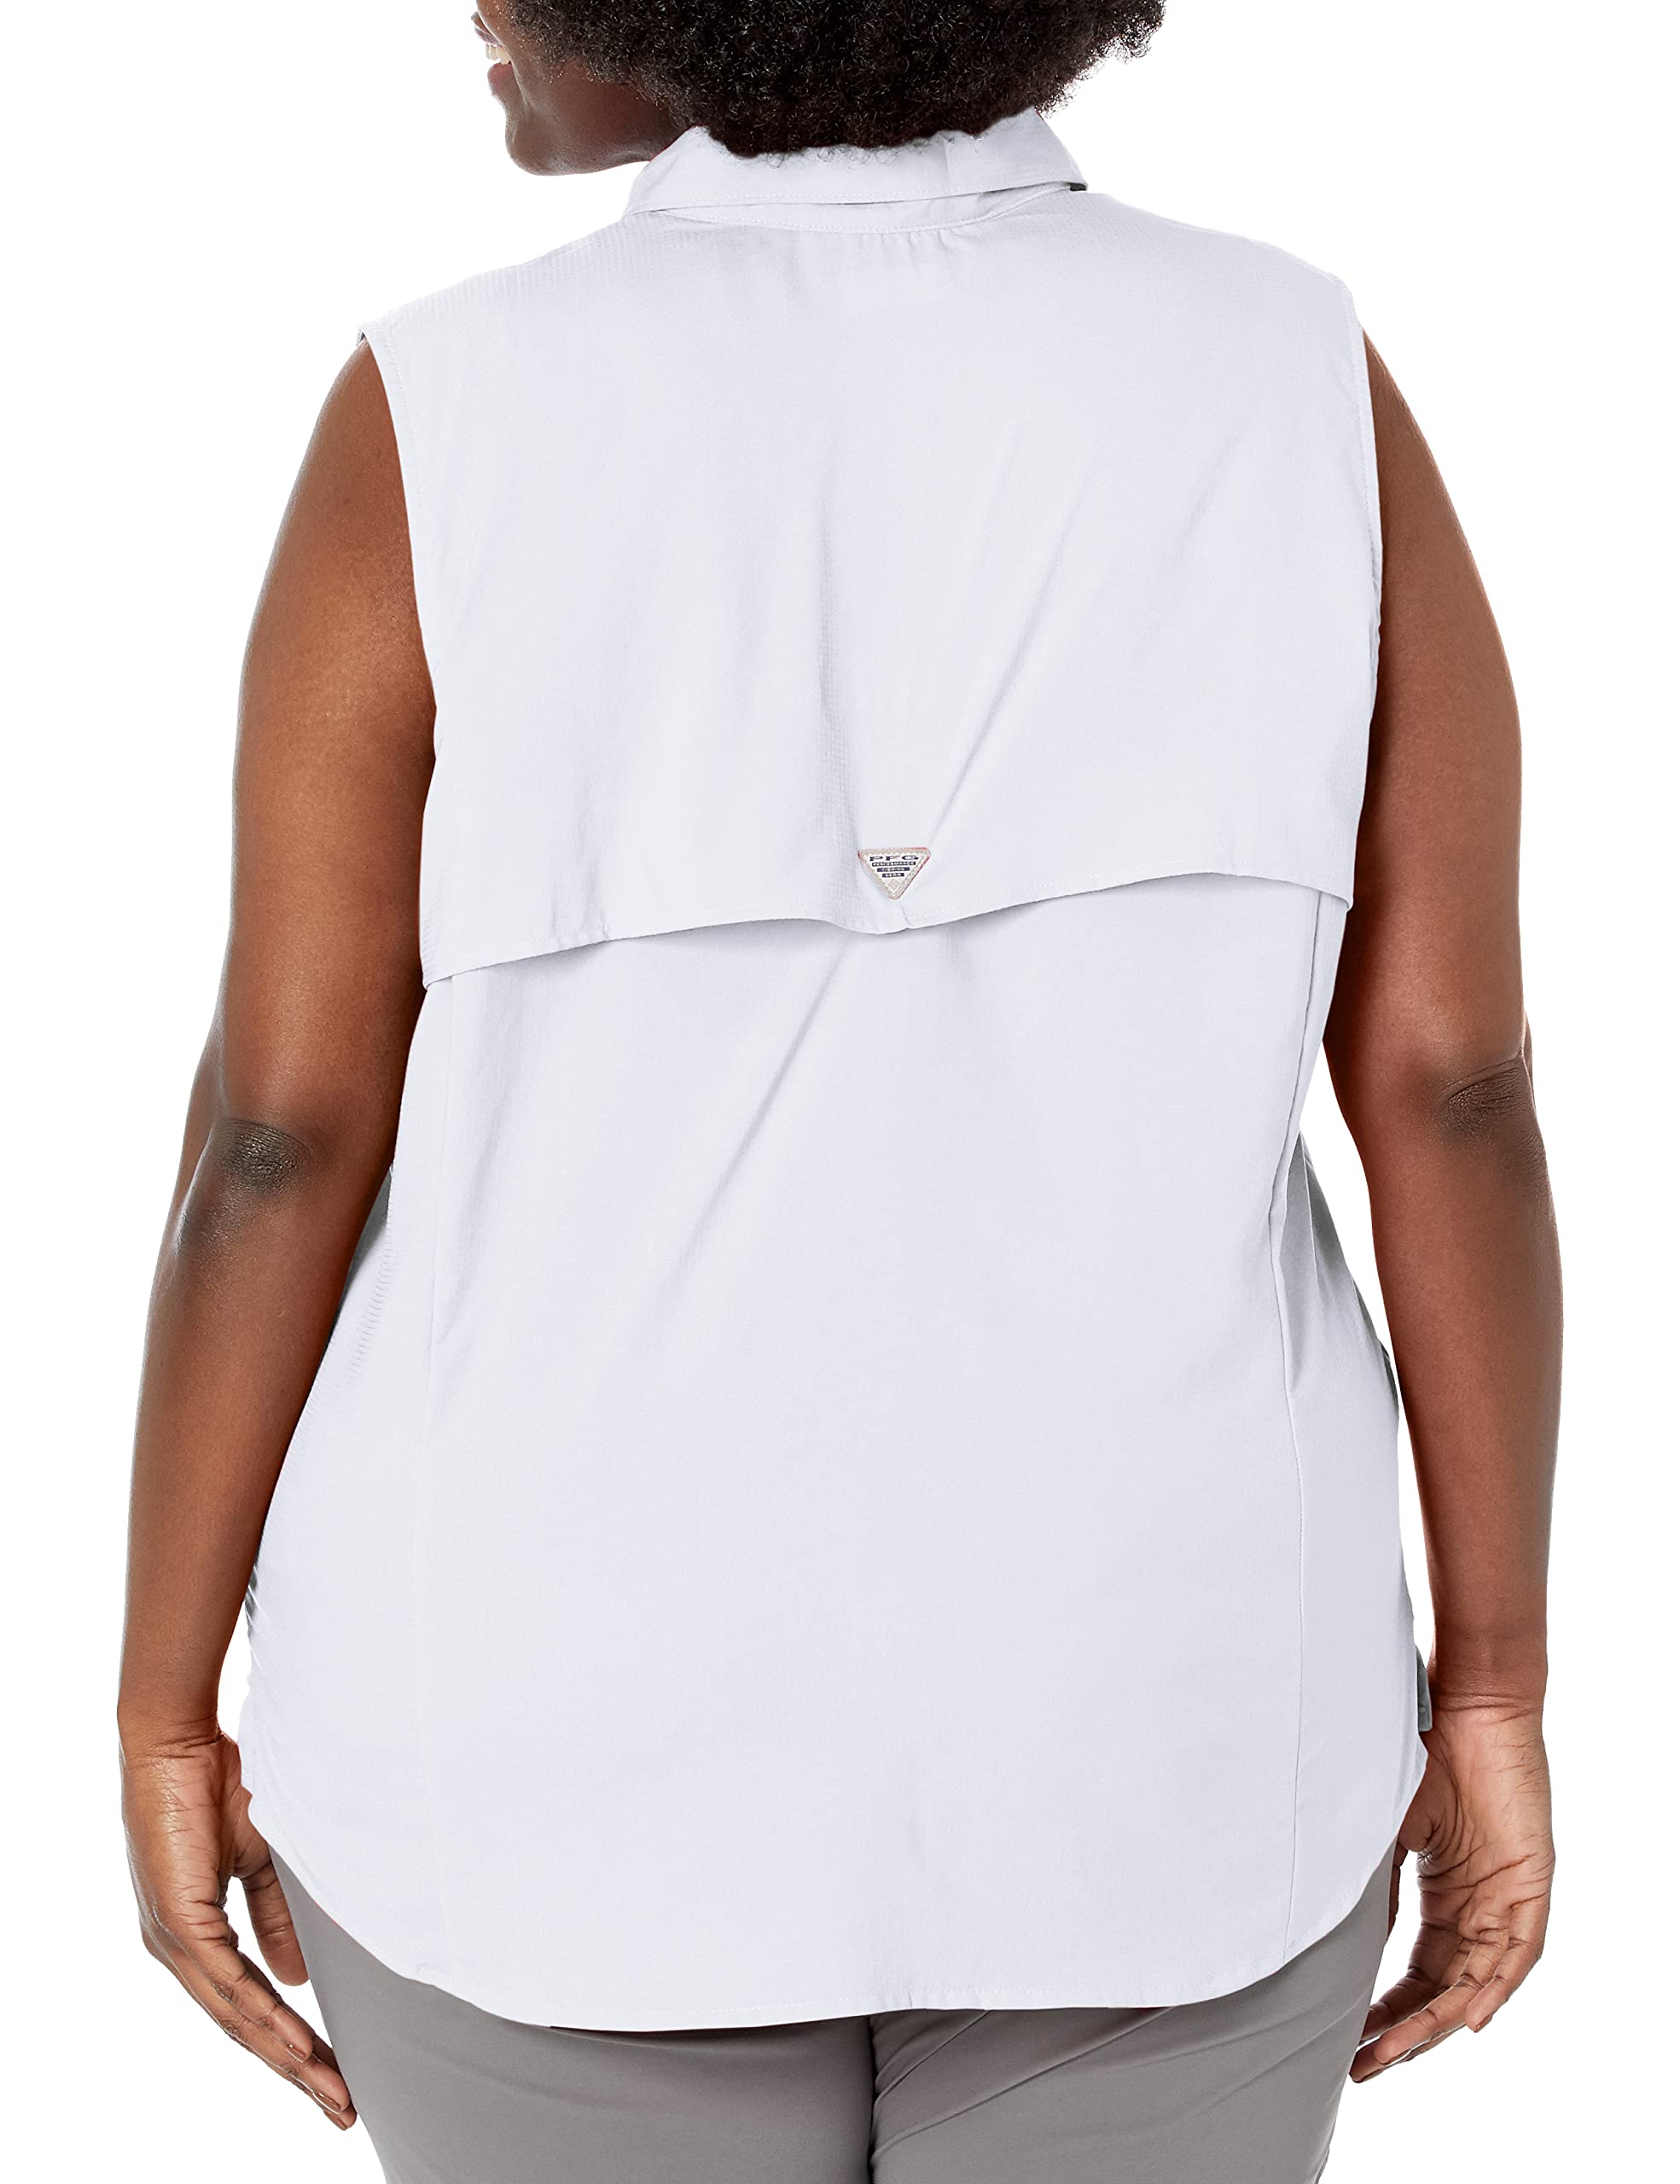 Columbia Women's Tamiami Sleeveless Shirt